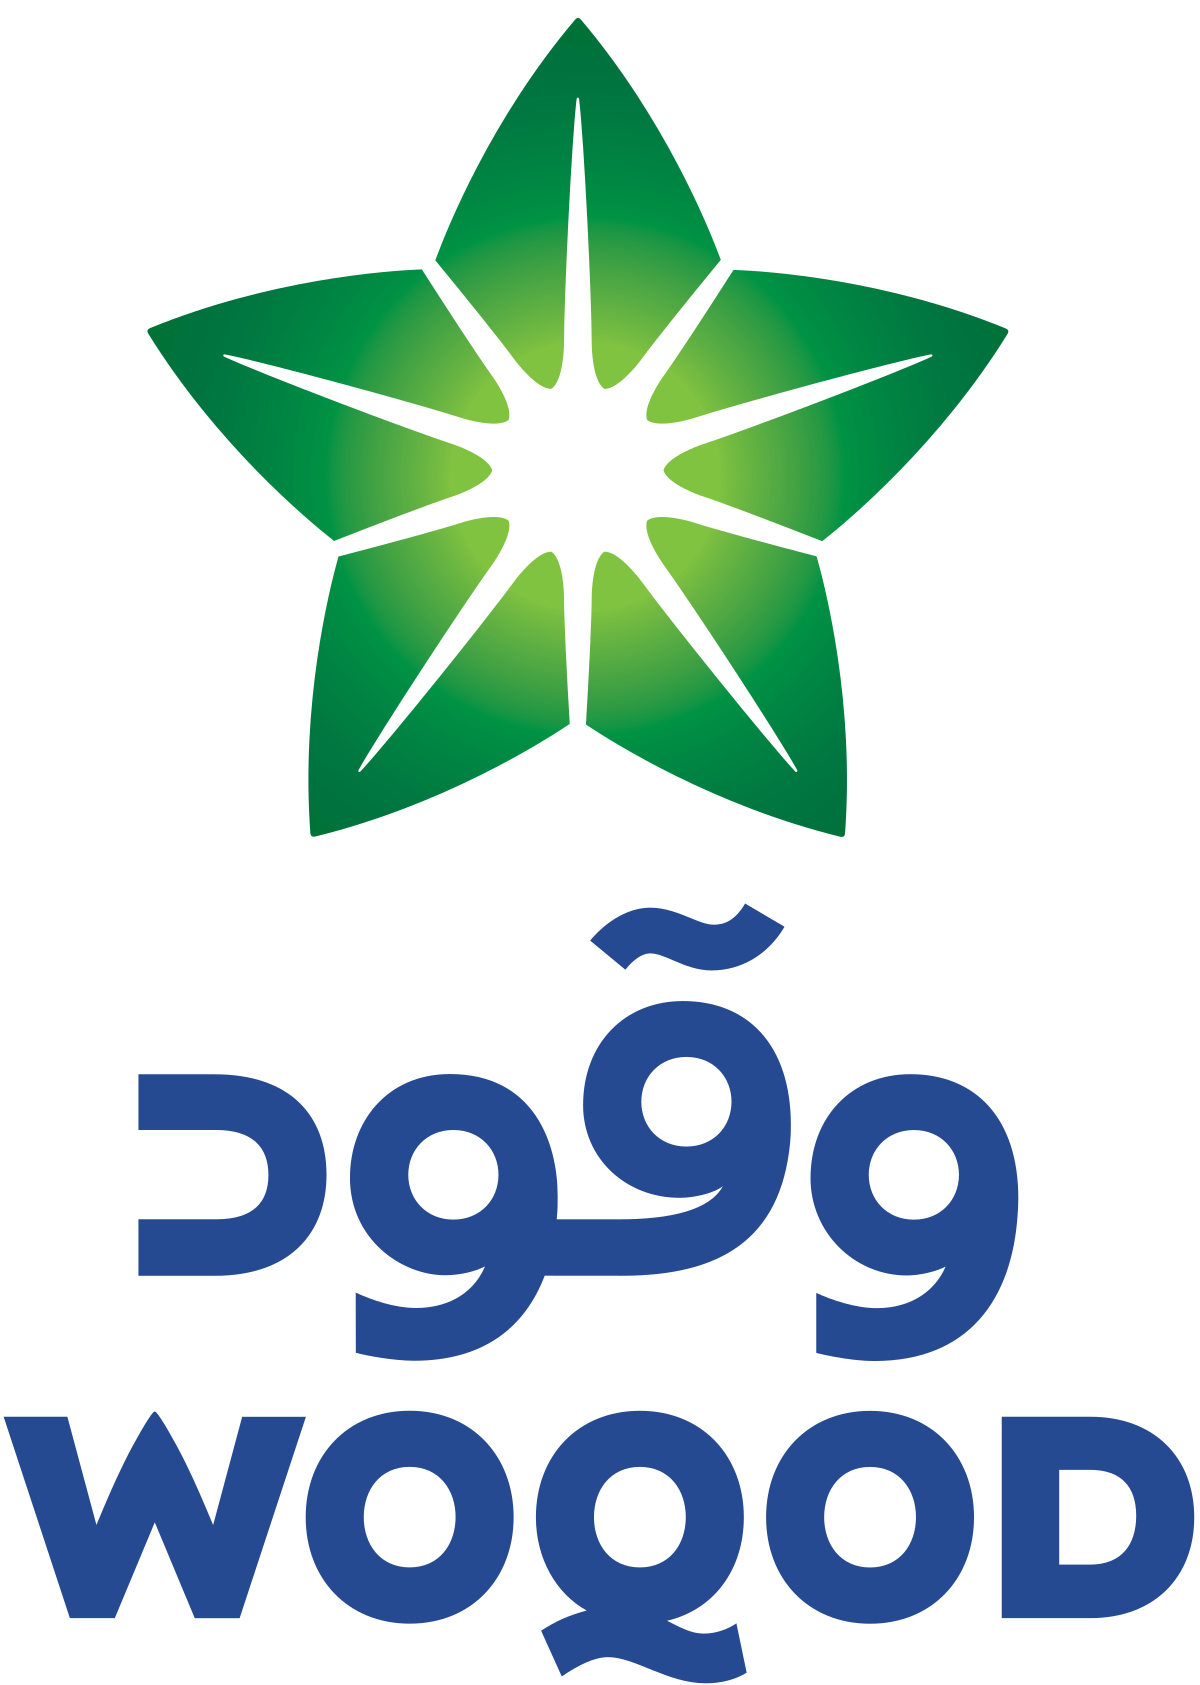 Qatar_Fuel_logo.svg